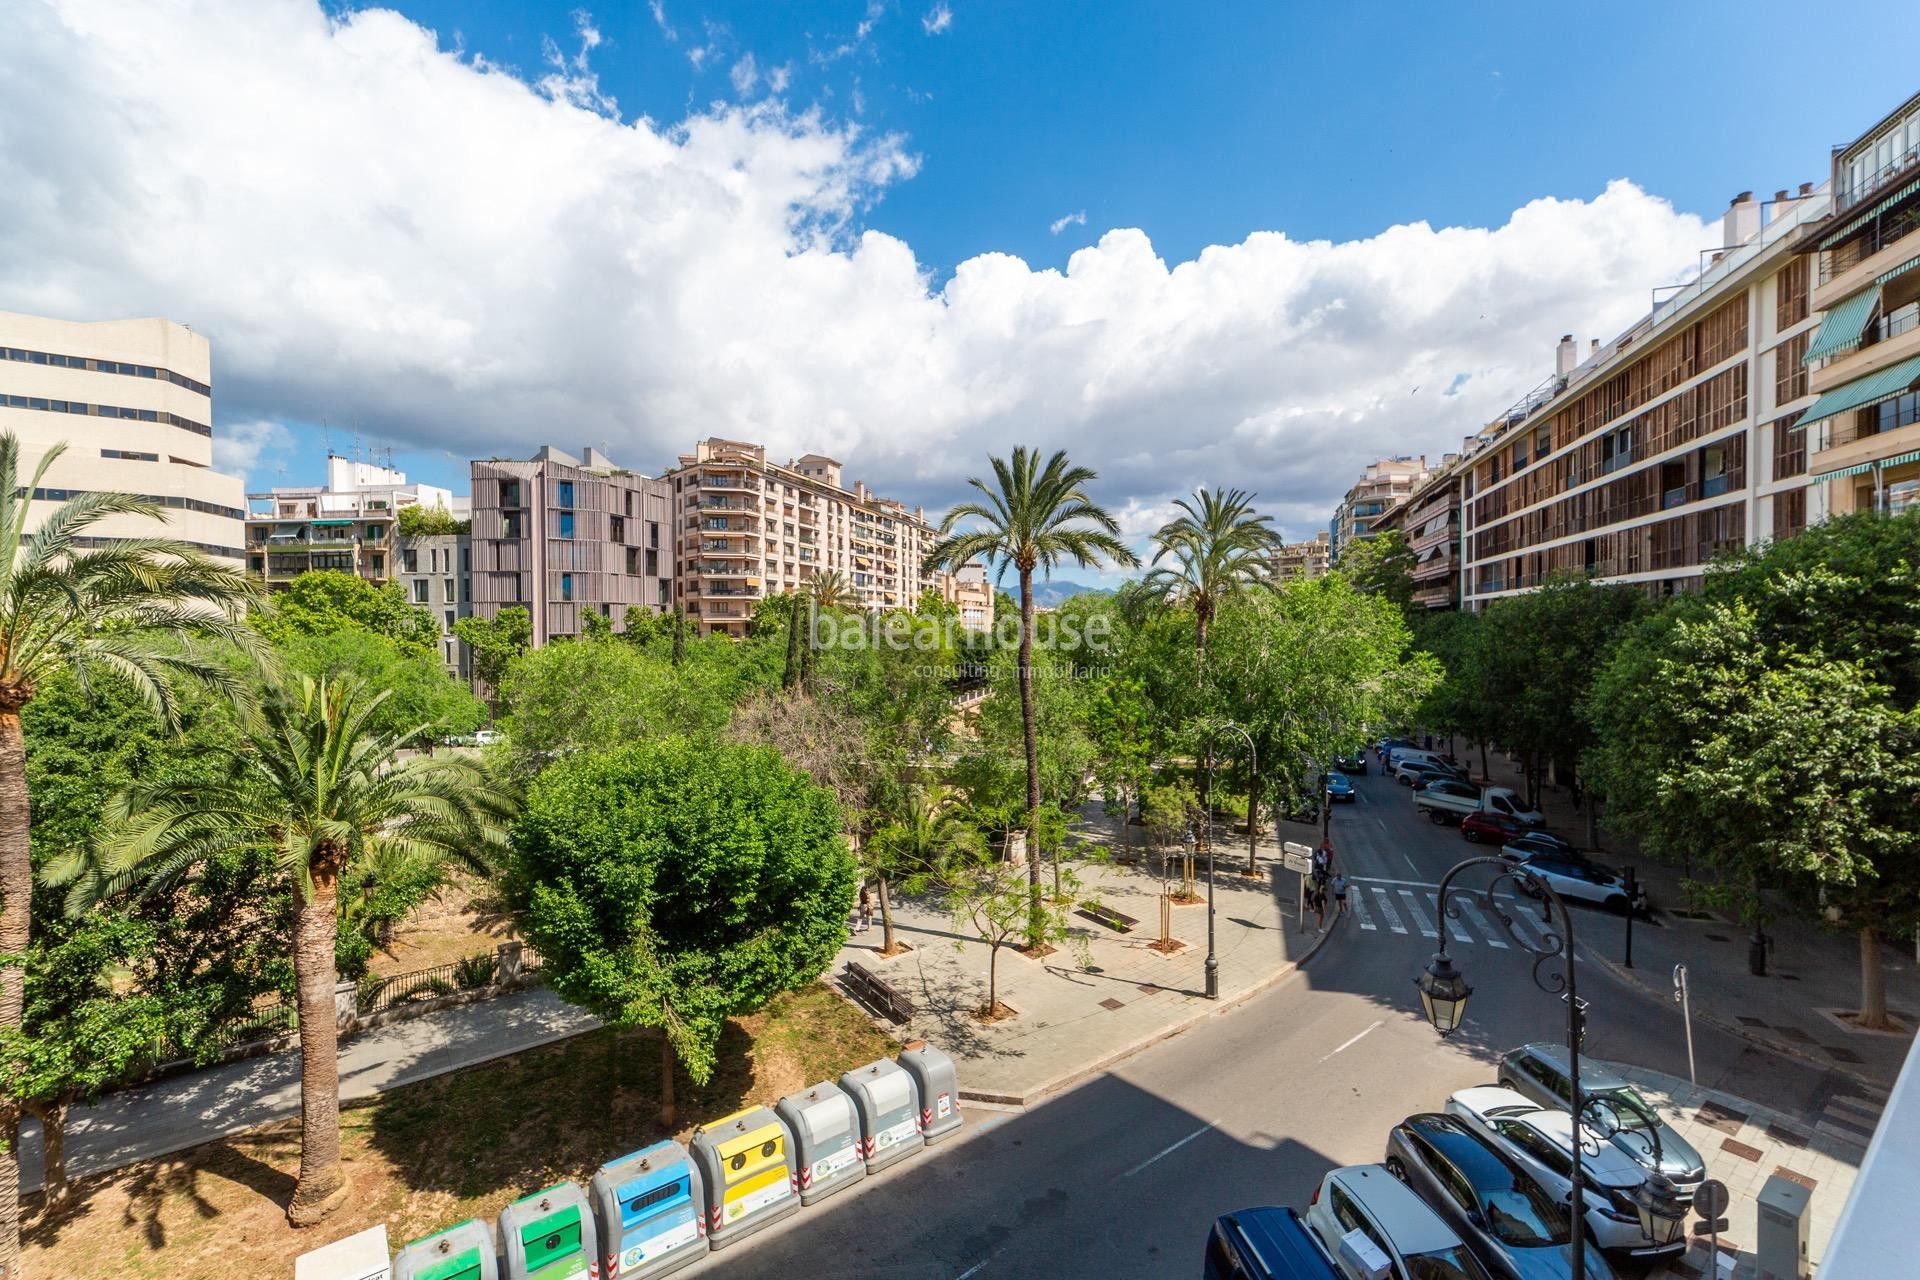 Gran piso lleno de luz que se asoma a todo el esplendor del Paseo Mallorca en Palma